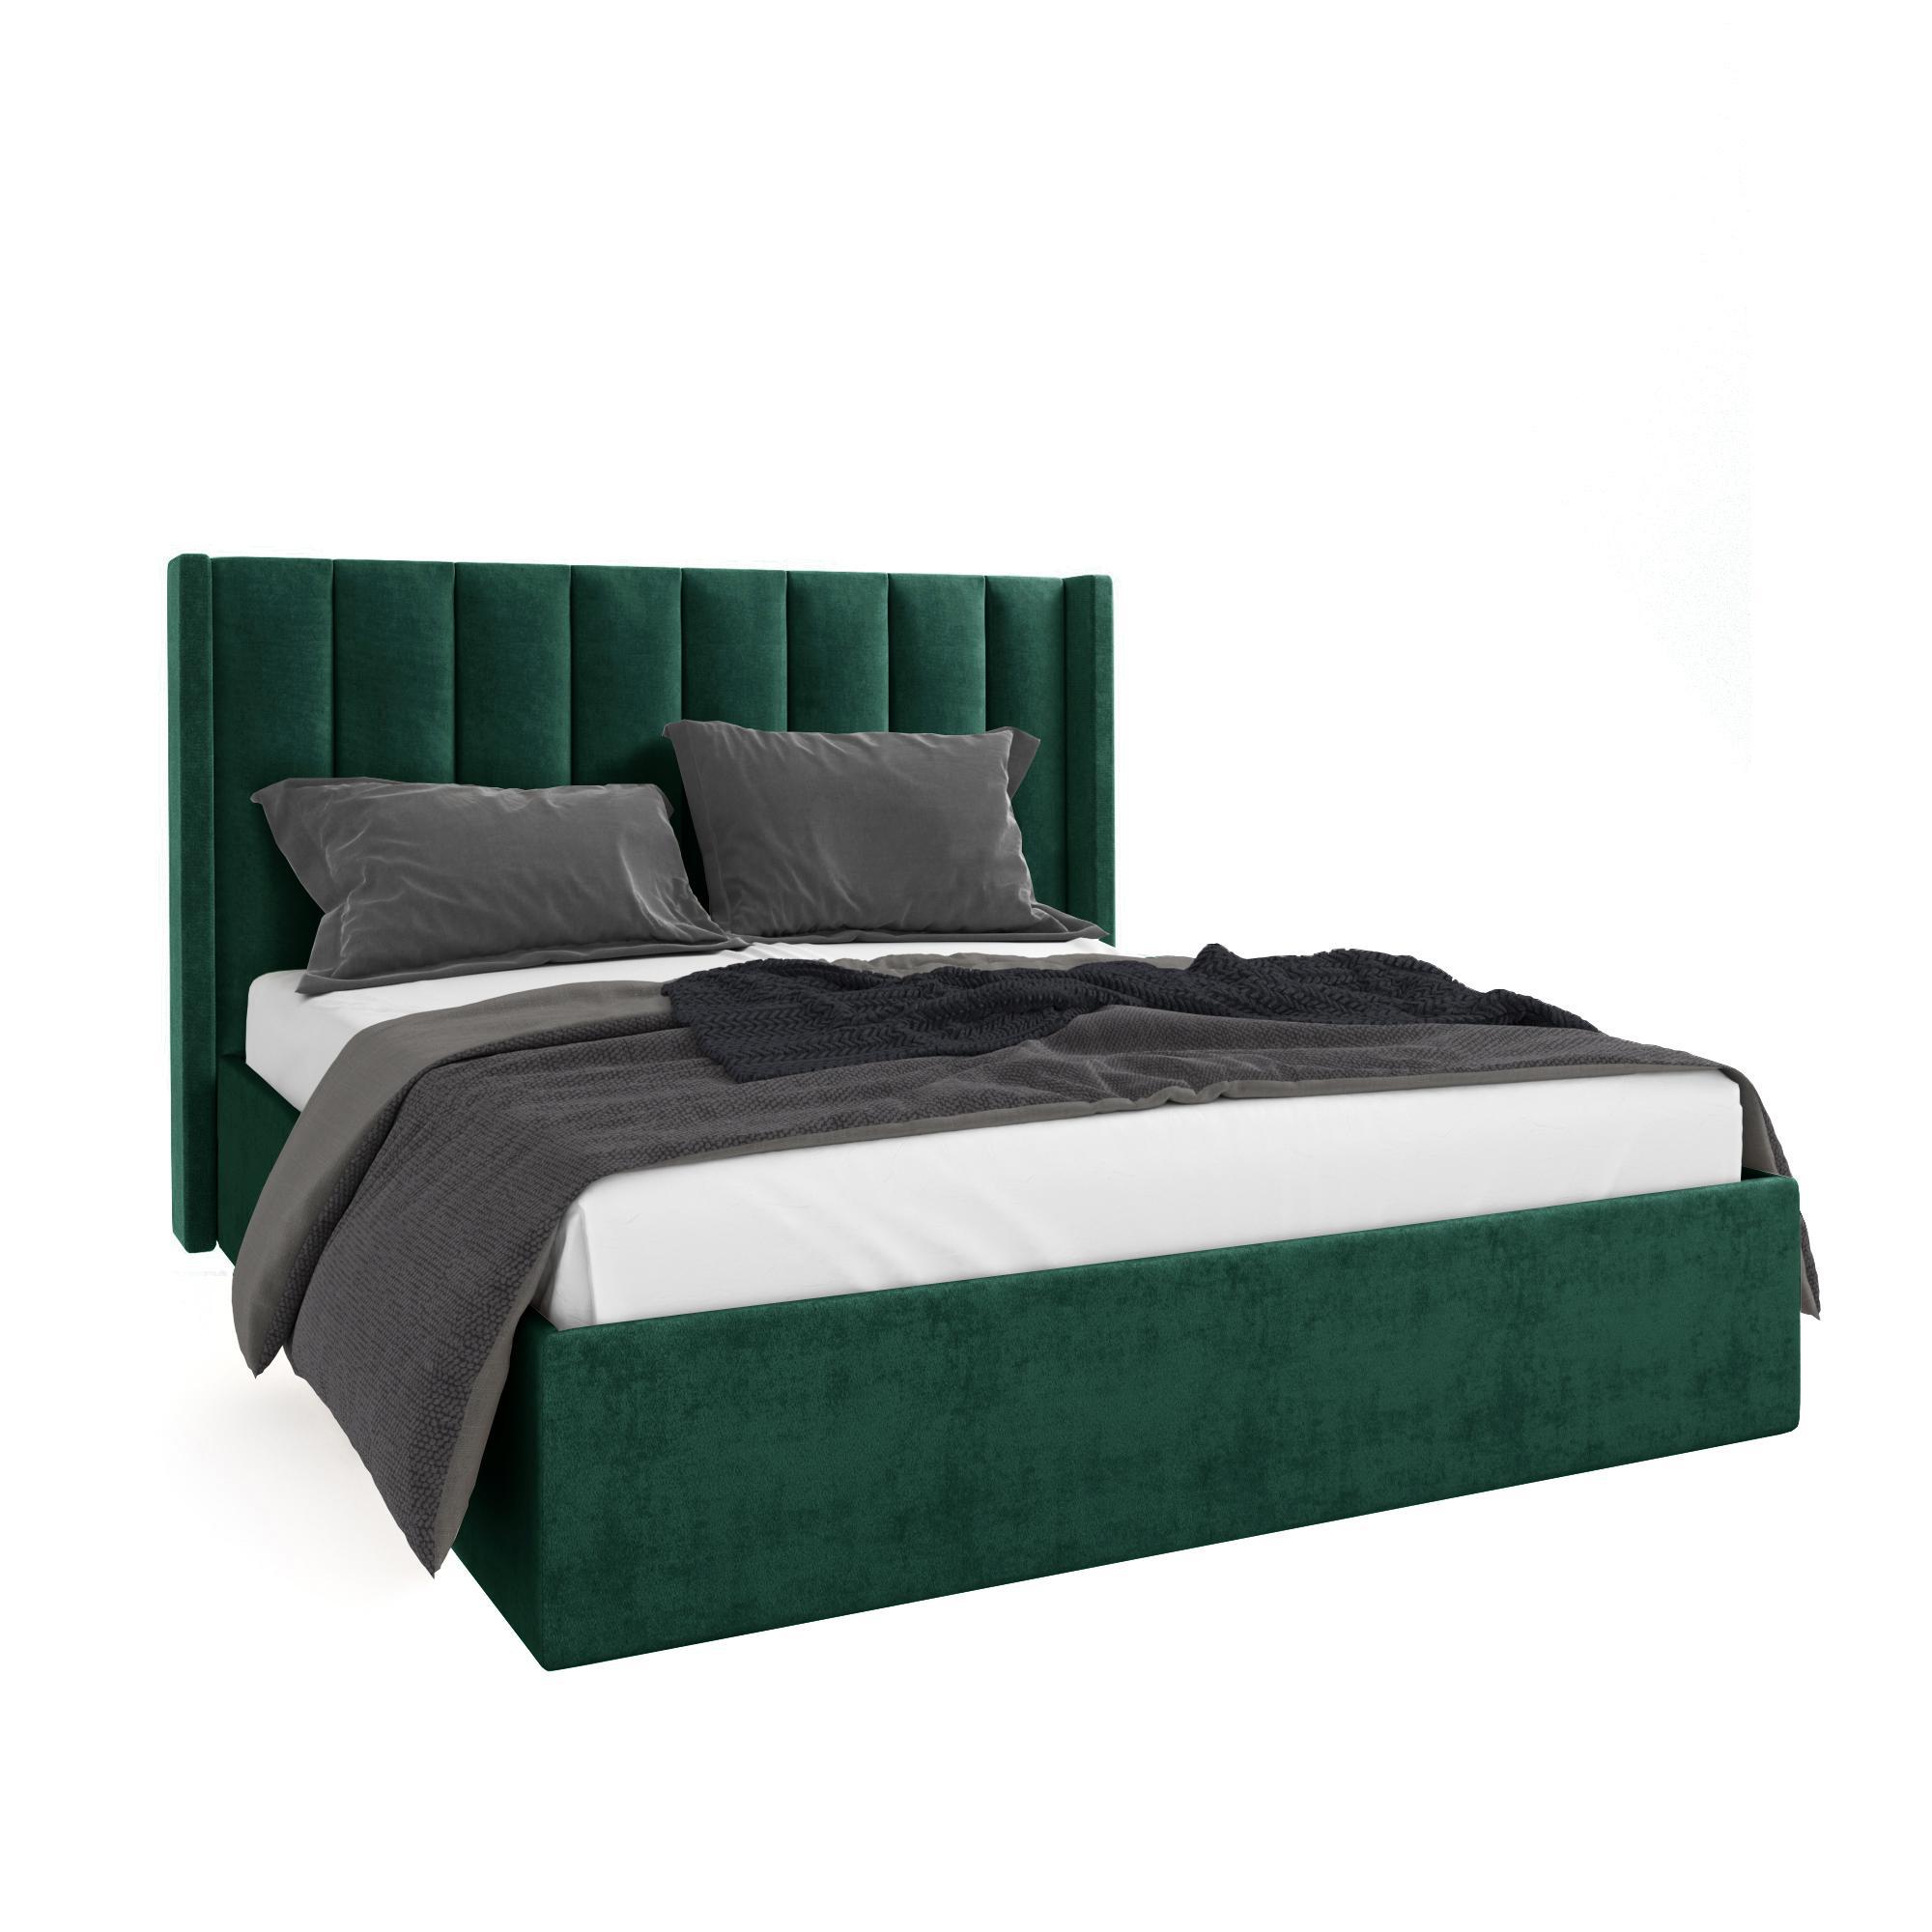 Кровать Жаклиз зеленая 200х200 изображение товара